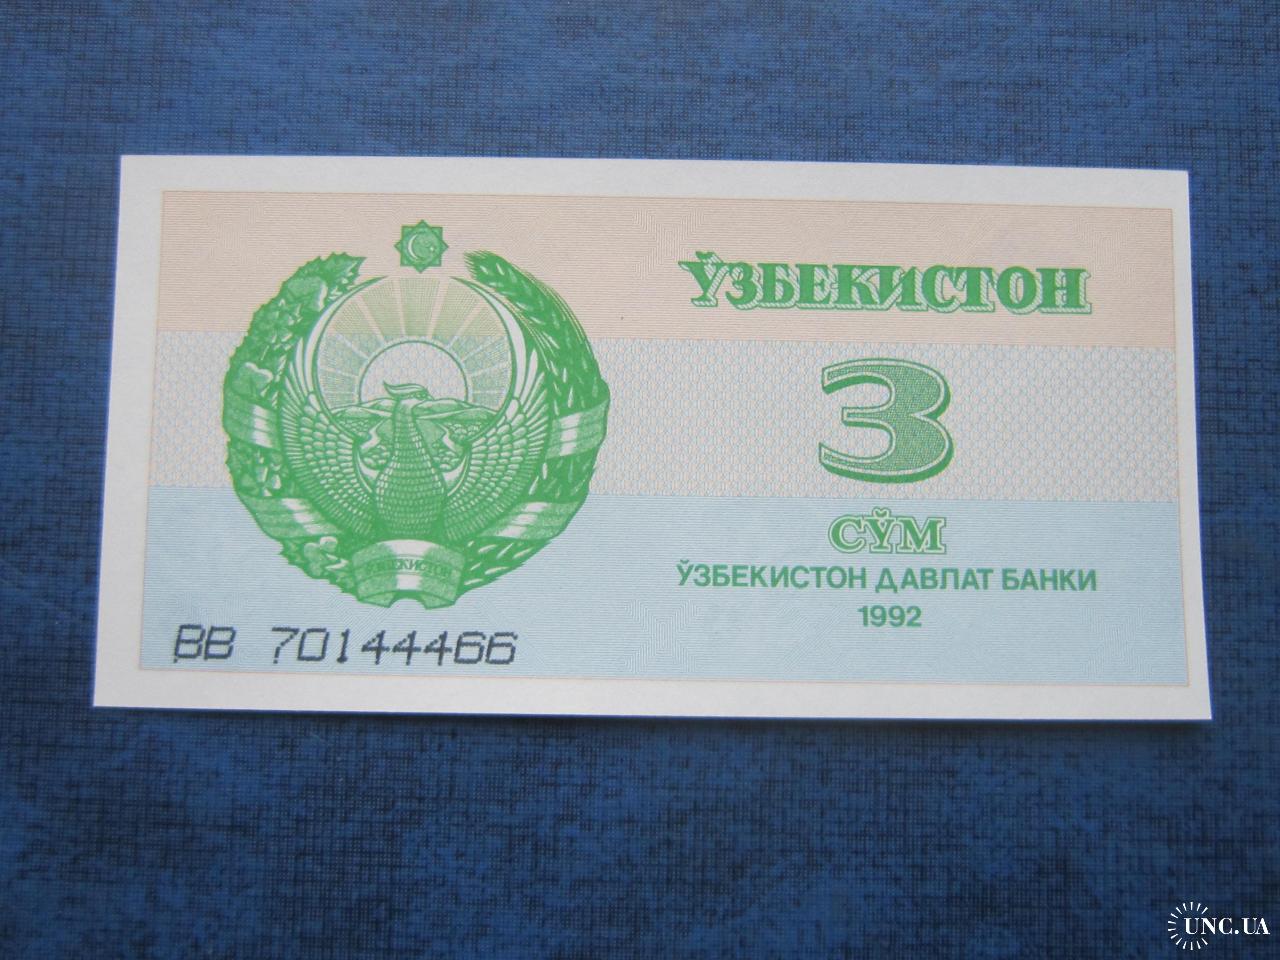 1 рубль в сумах узбекистан на сегодня. Сум купоны в Узбекистане фото. Узбекистан 1992. Бона Узбекистан 3 сум 1994. Облигации Узбекистан 1992.